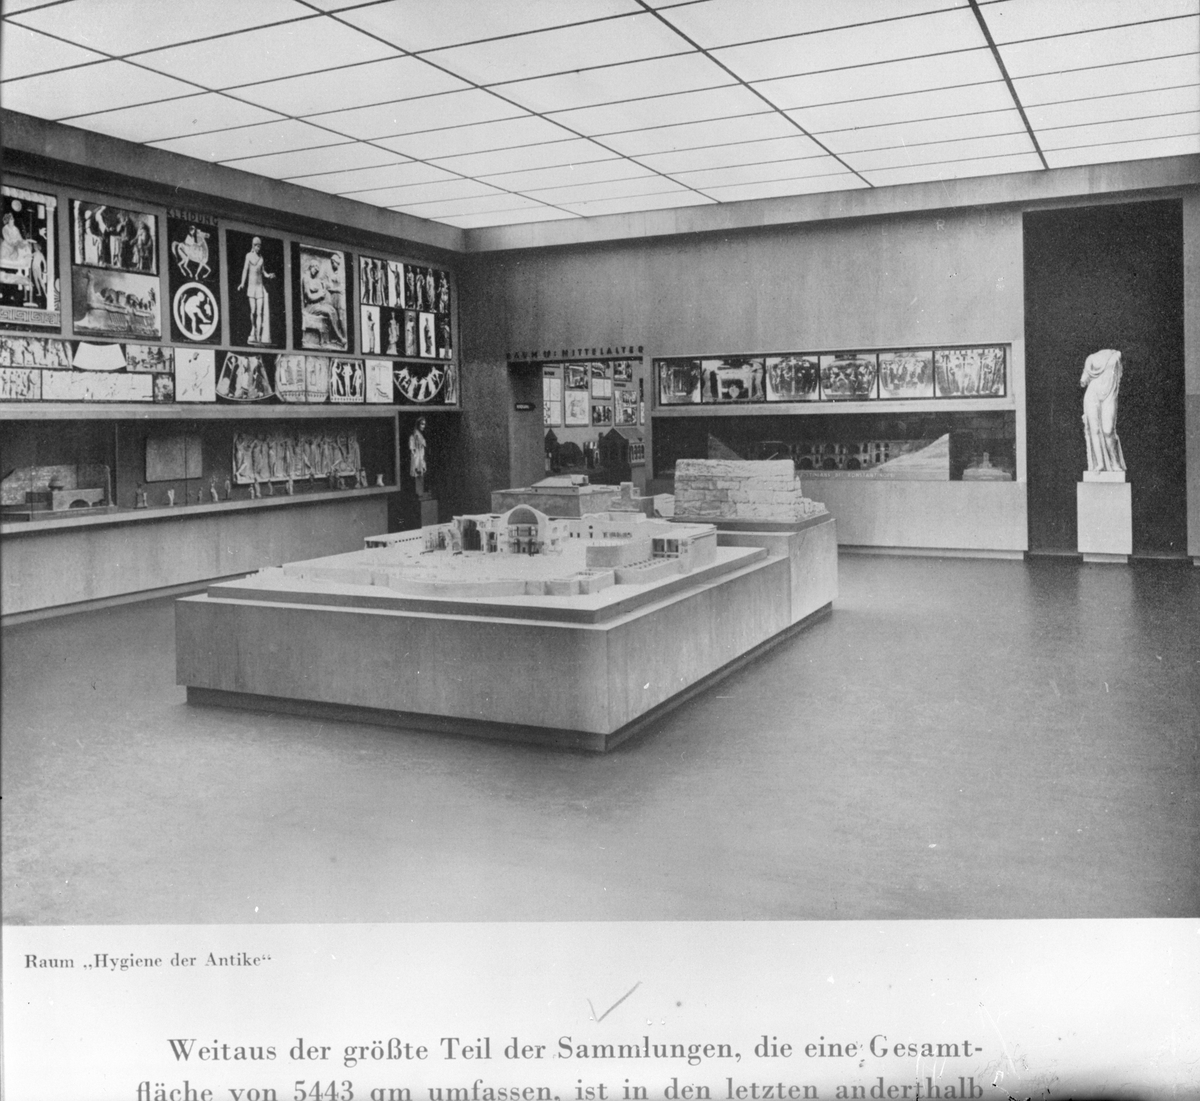 Interiör från utställningshallen.
Från den internationella hygien-utställningen i Dresden 1930-31.